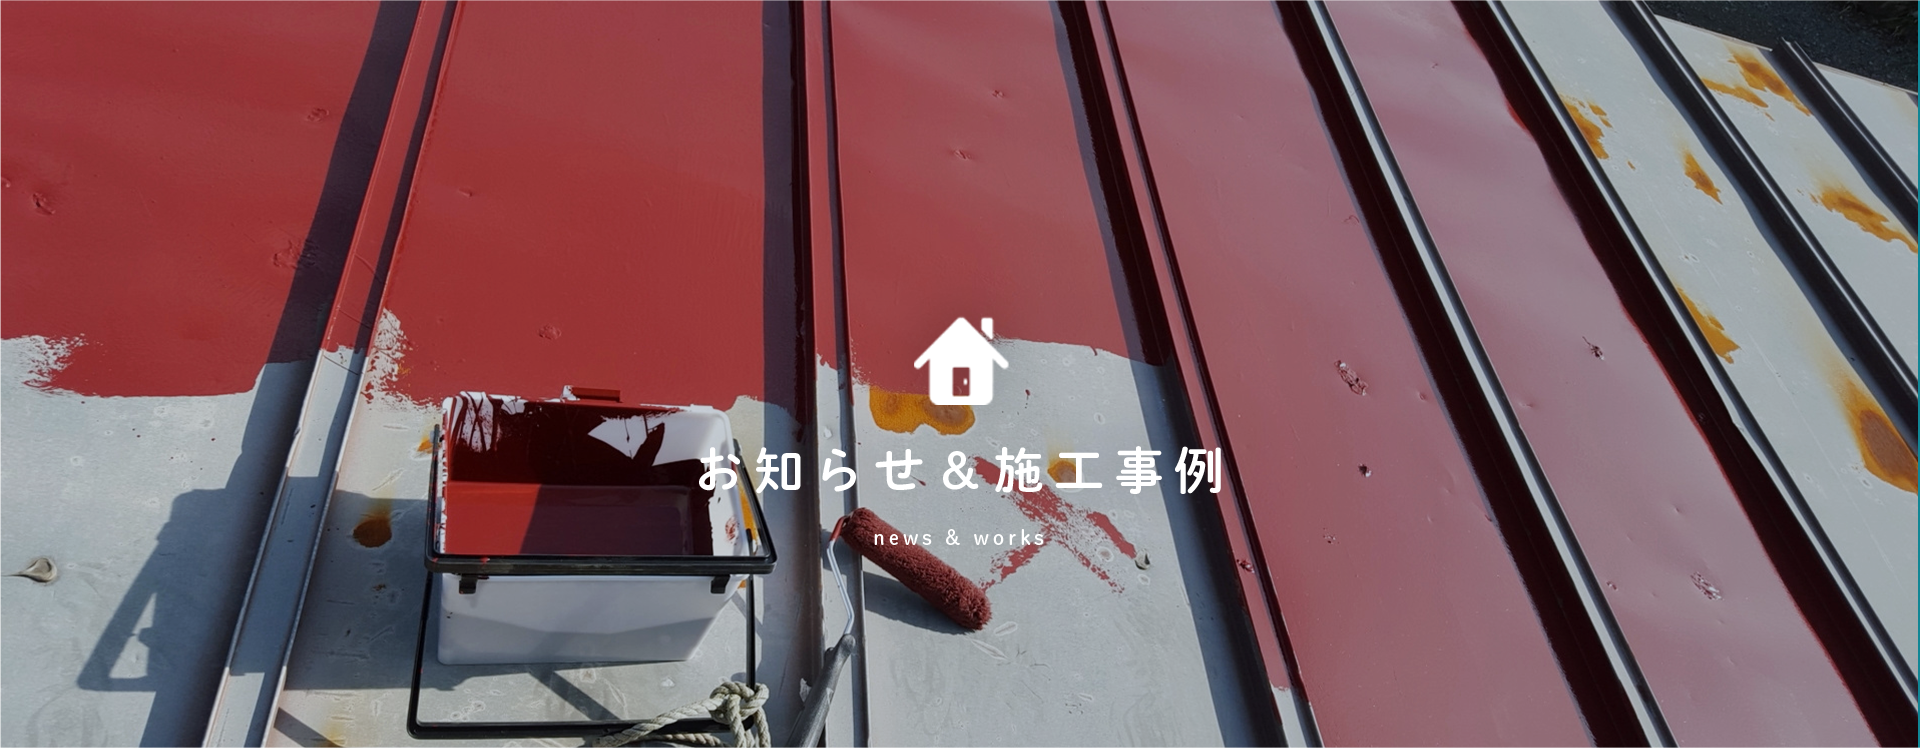 山田塗装のホームページをリニューアルいたしました